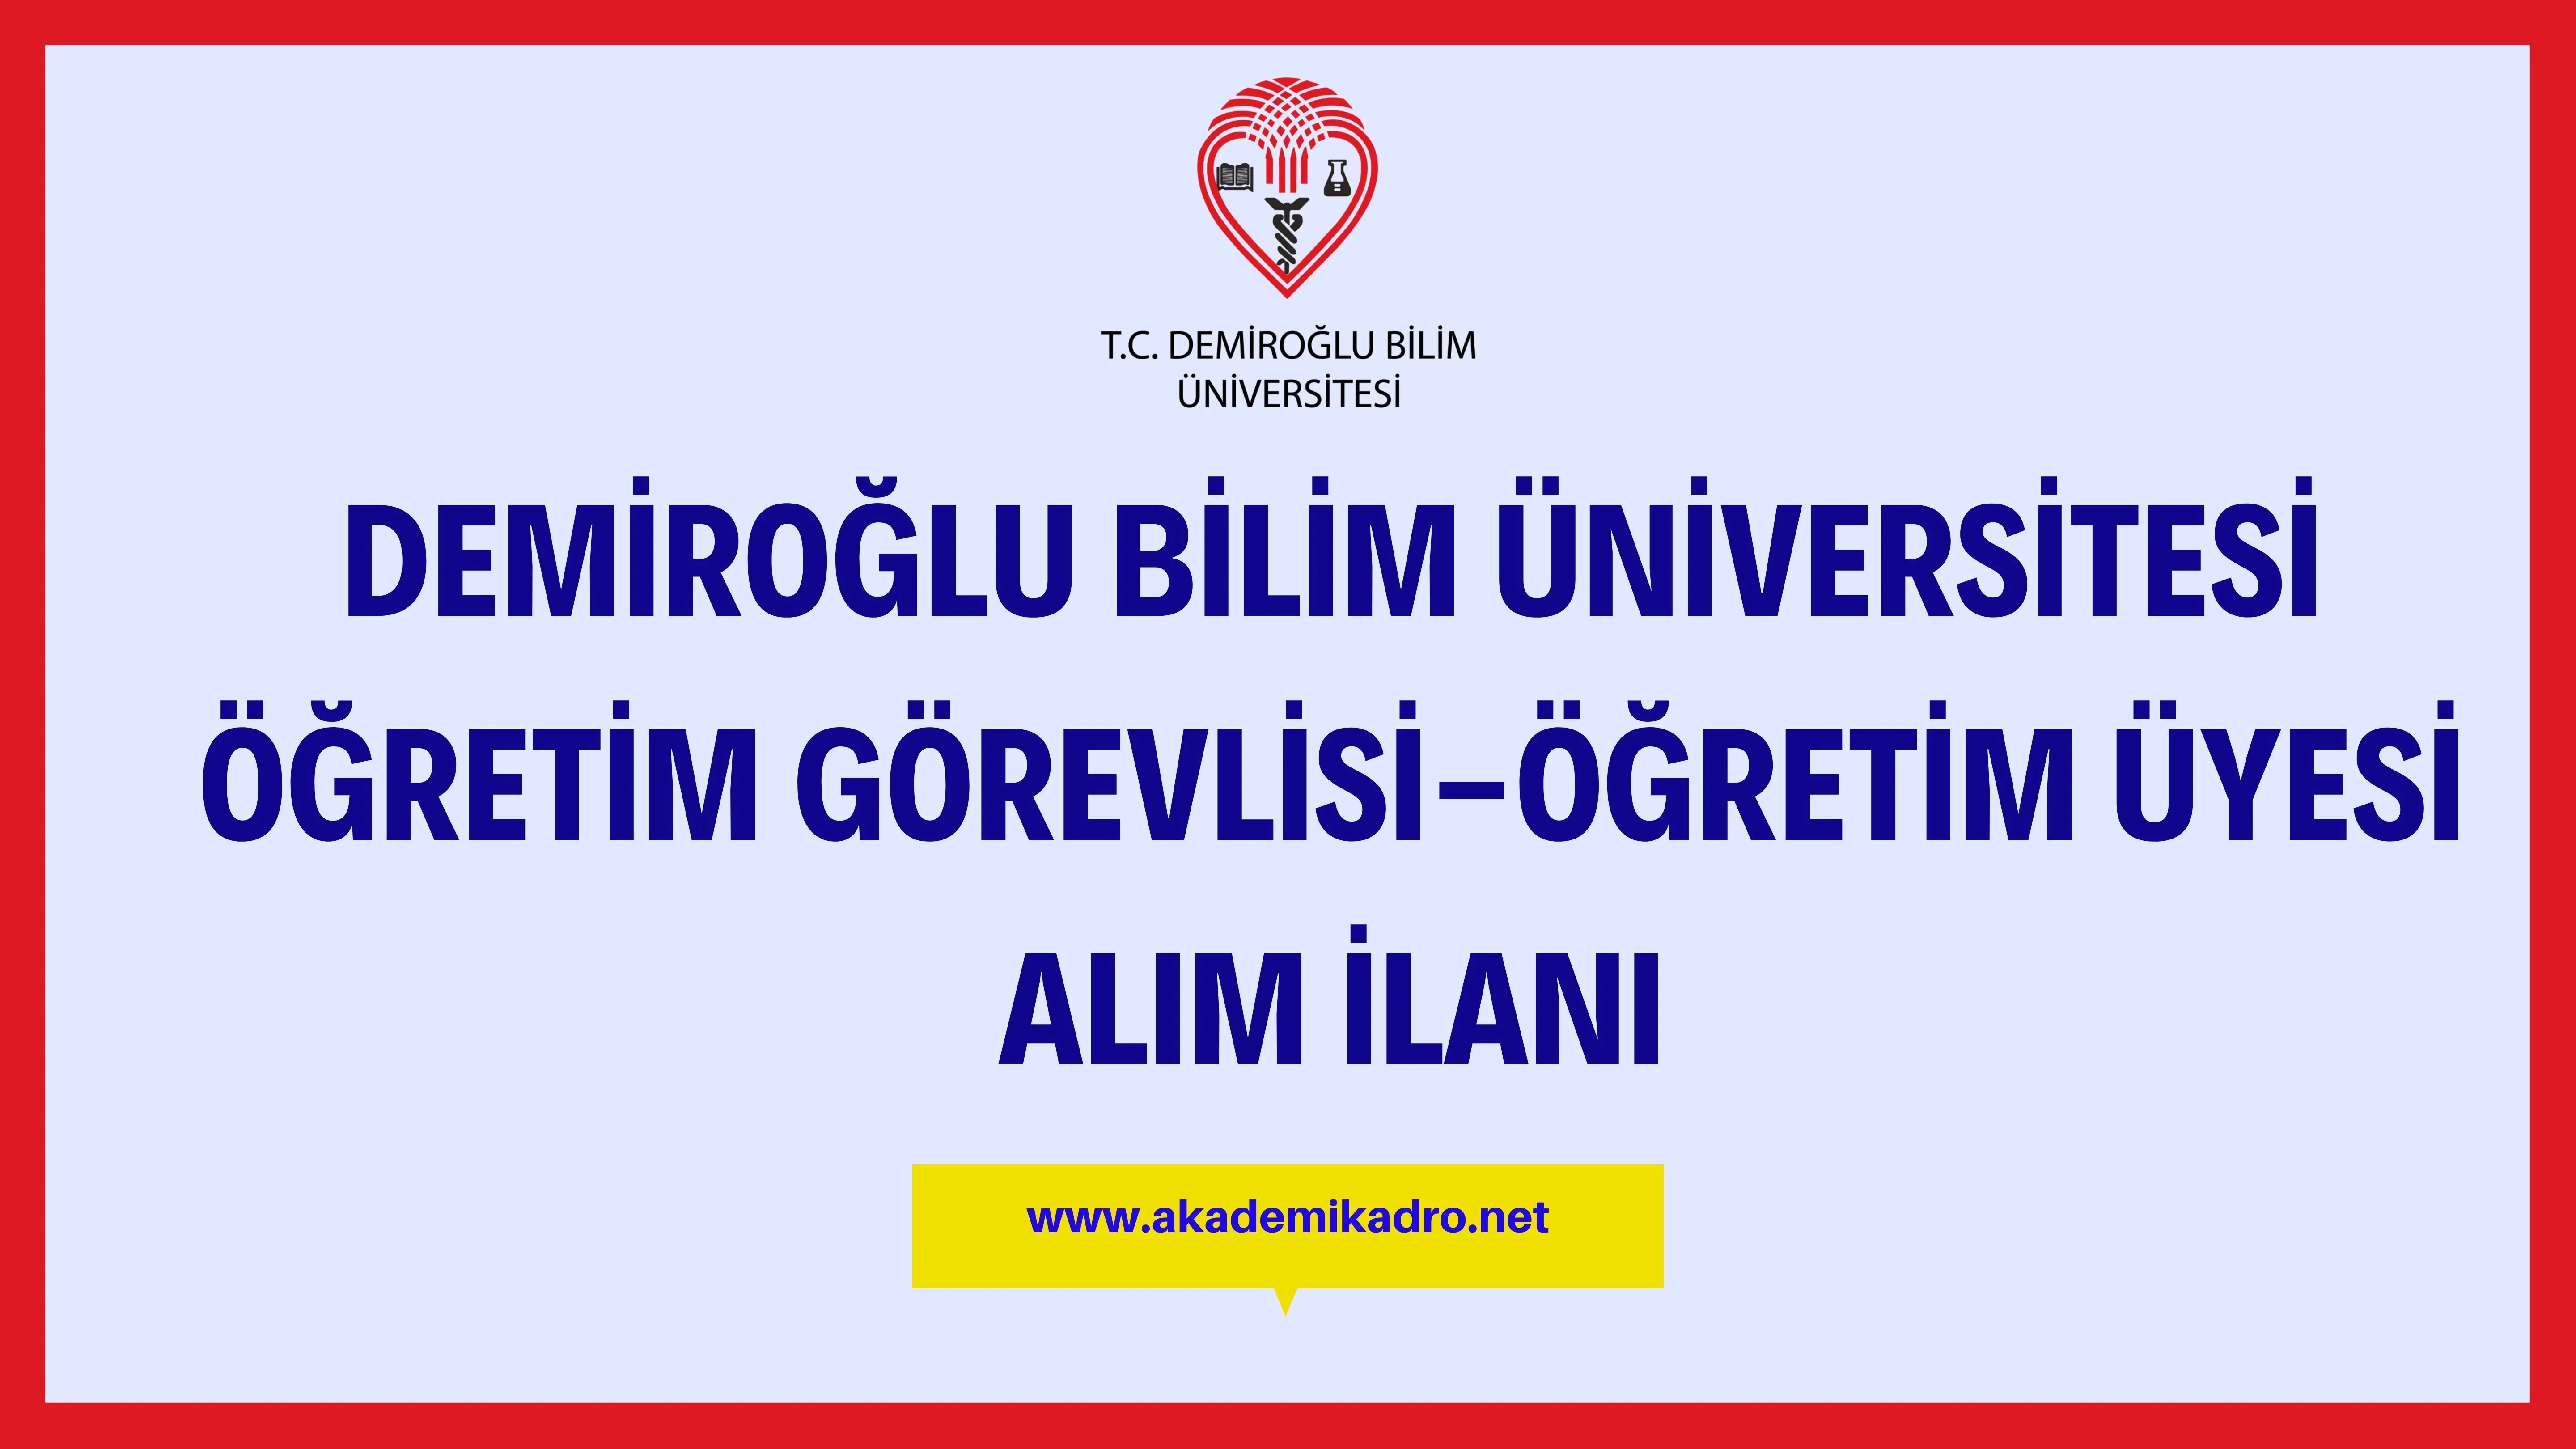 Demiroğlu Bilim Üniversitesi Öğretim görevlisi ve 6 öğretim üyesi alacak. Son başvuru tarihi 09 Ocak 2023.